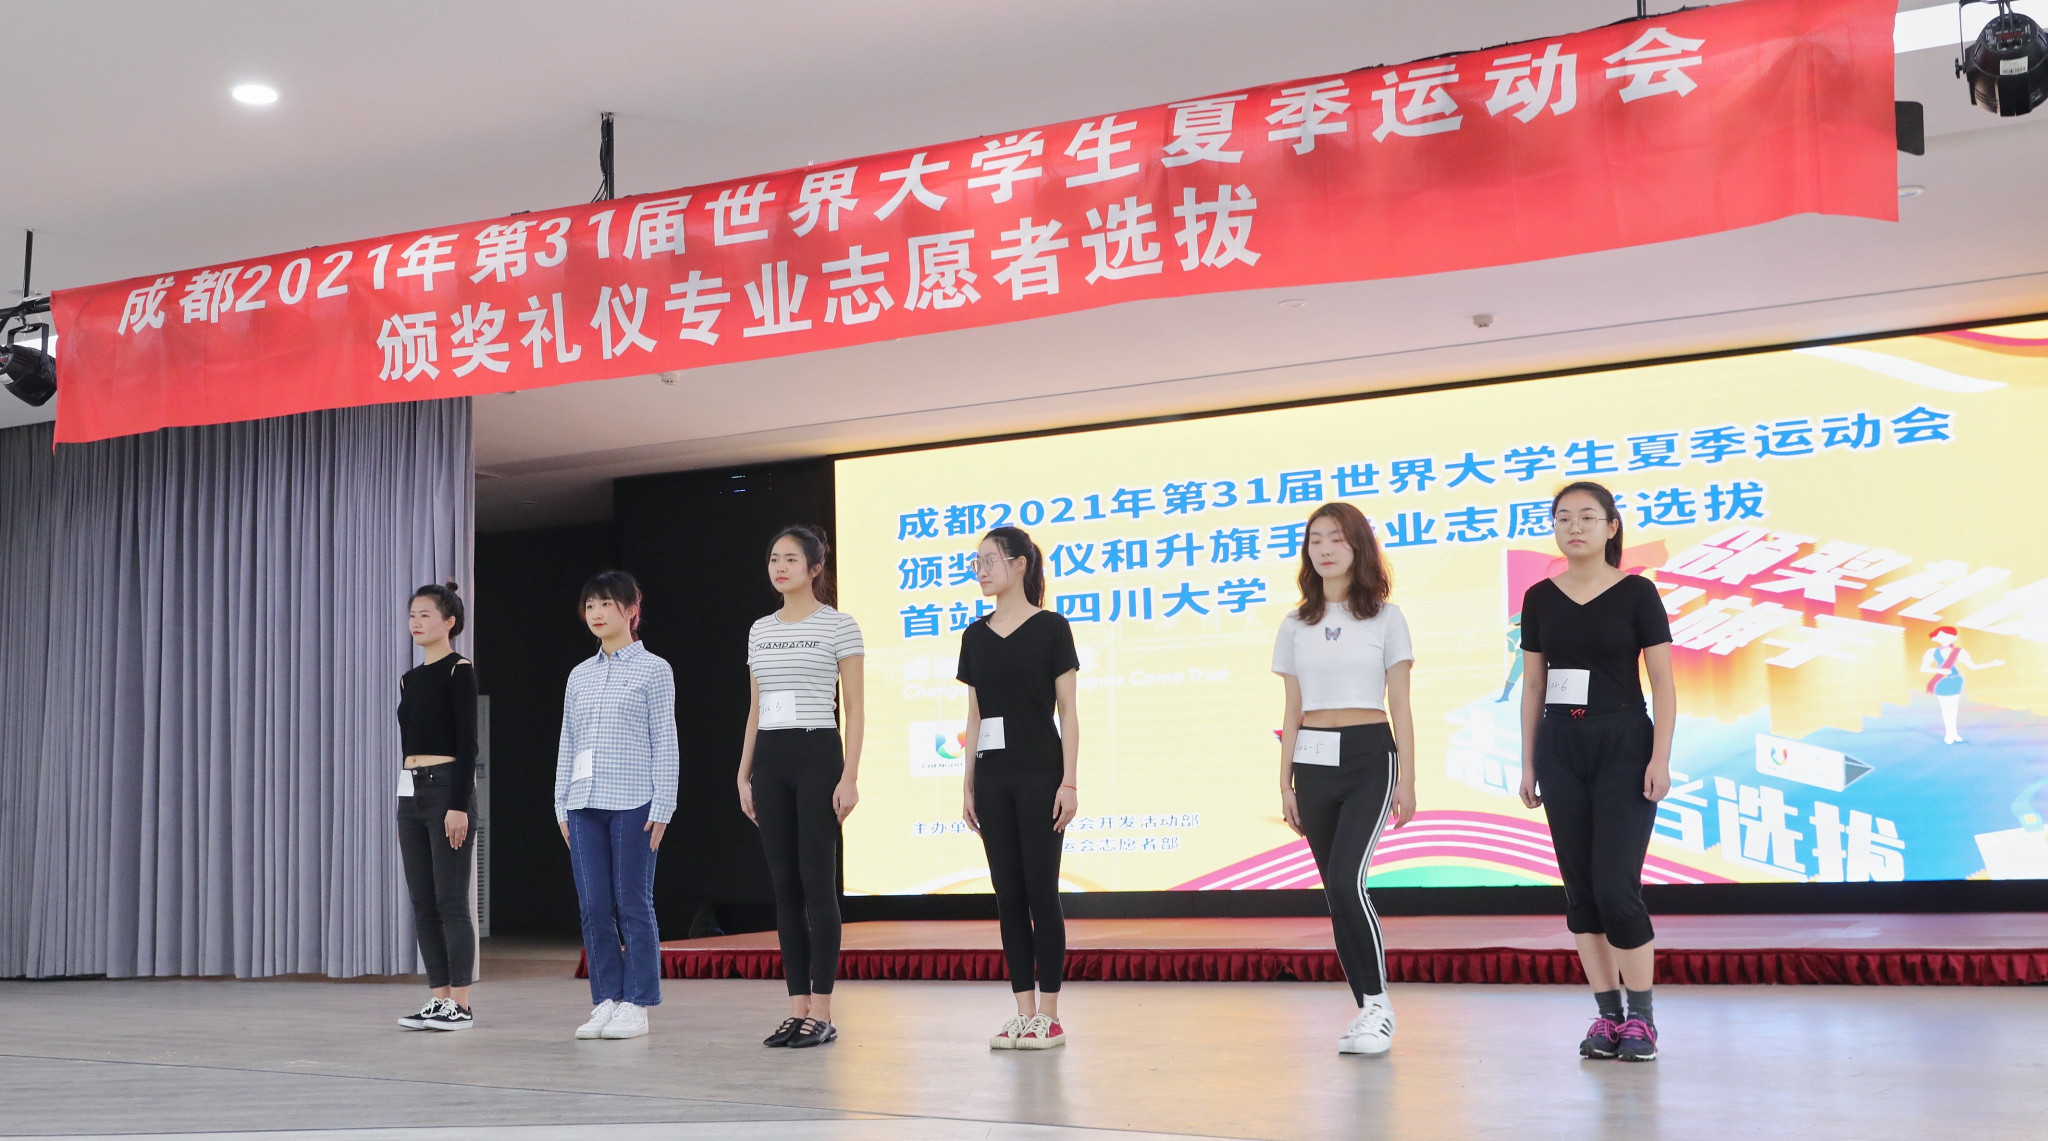 Chengdu 2021 begins selecting volunteers for Summer World University Games ceremonies